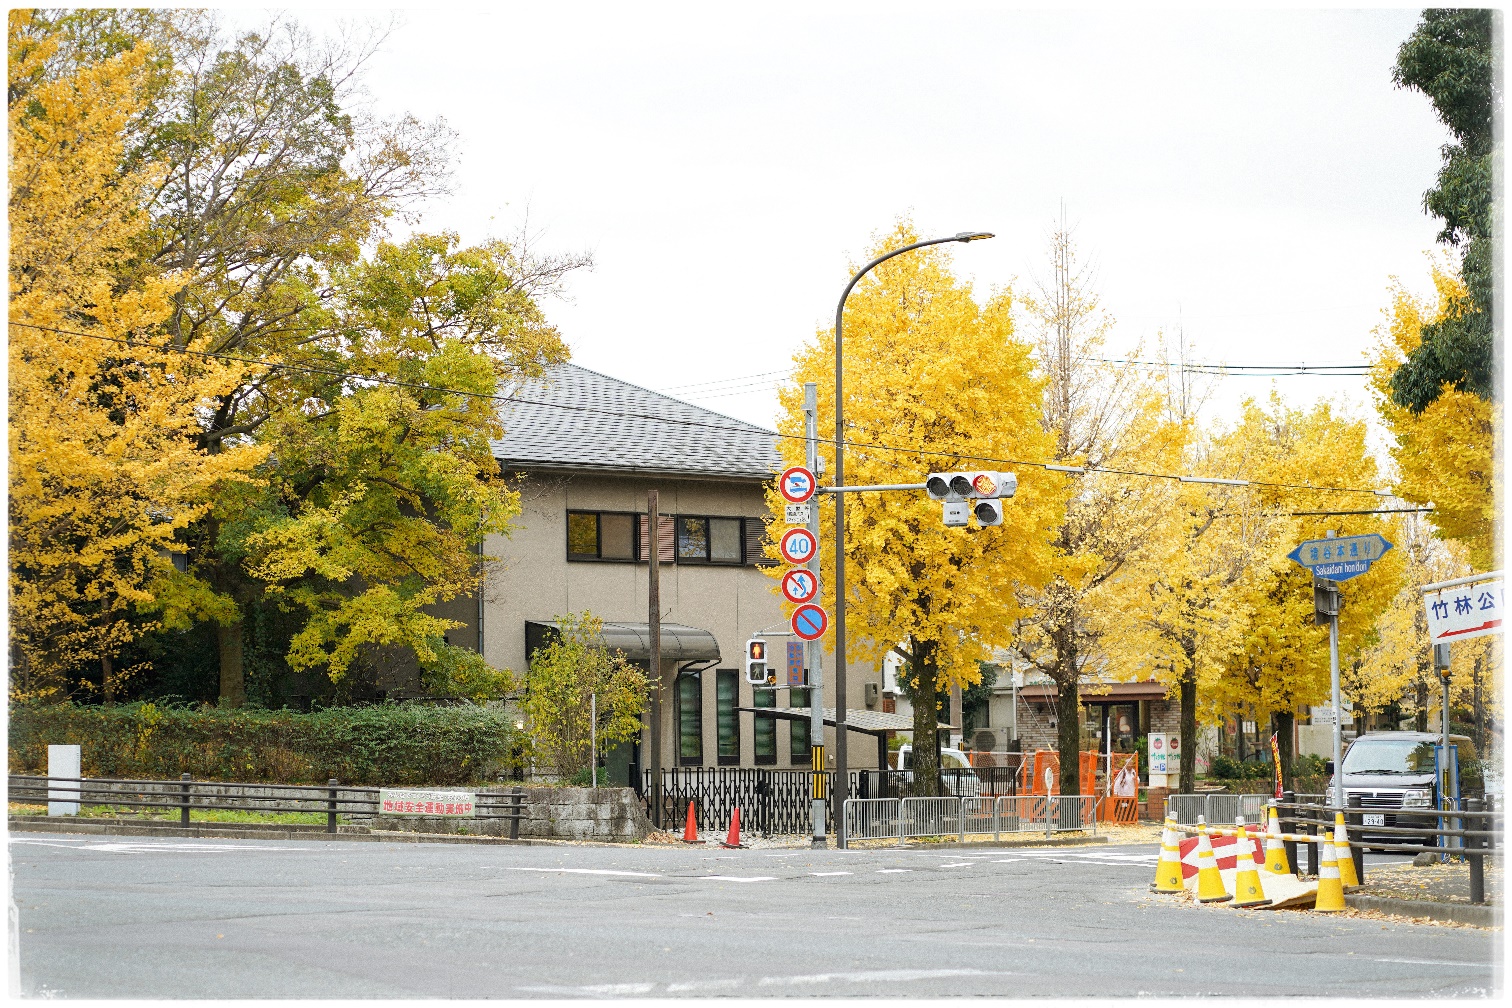 Đường phố trải thảm vàng, công viên rợp sắc đỏ ngày cuối thu ở Nhật Bản - 1